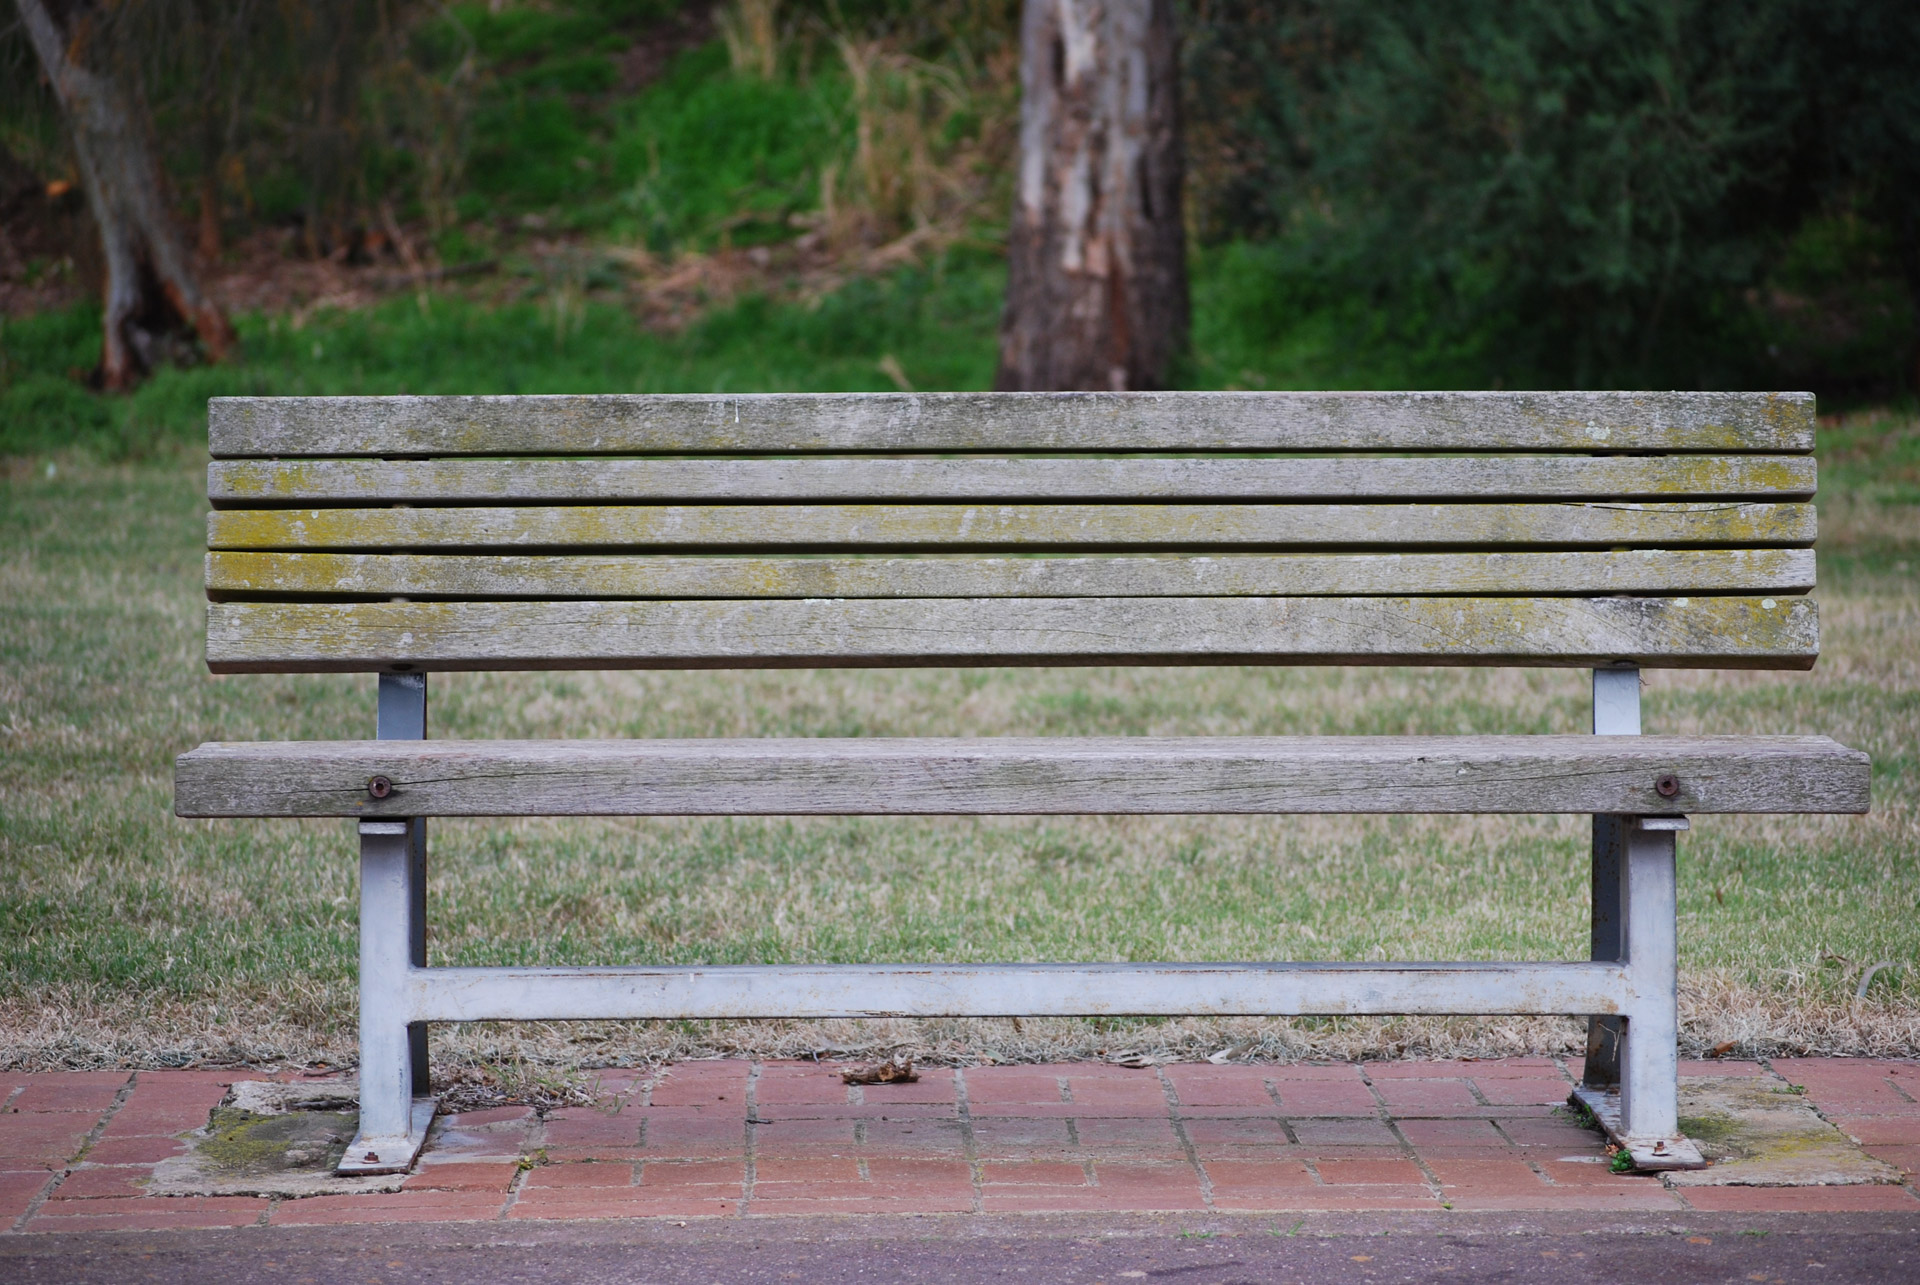 Bench in a park in Australia